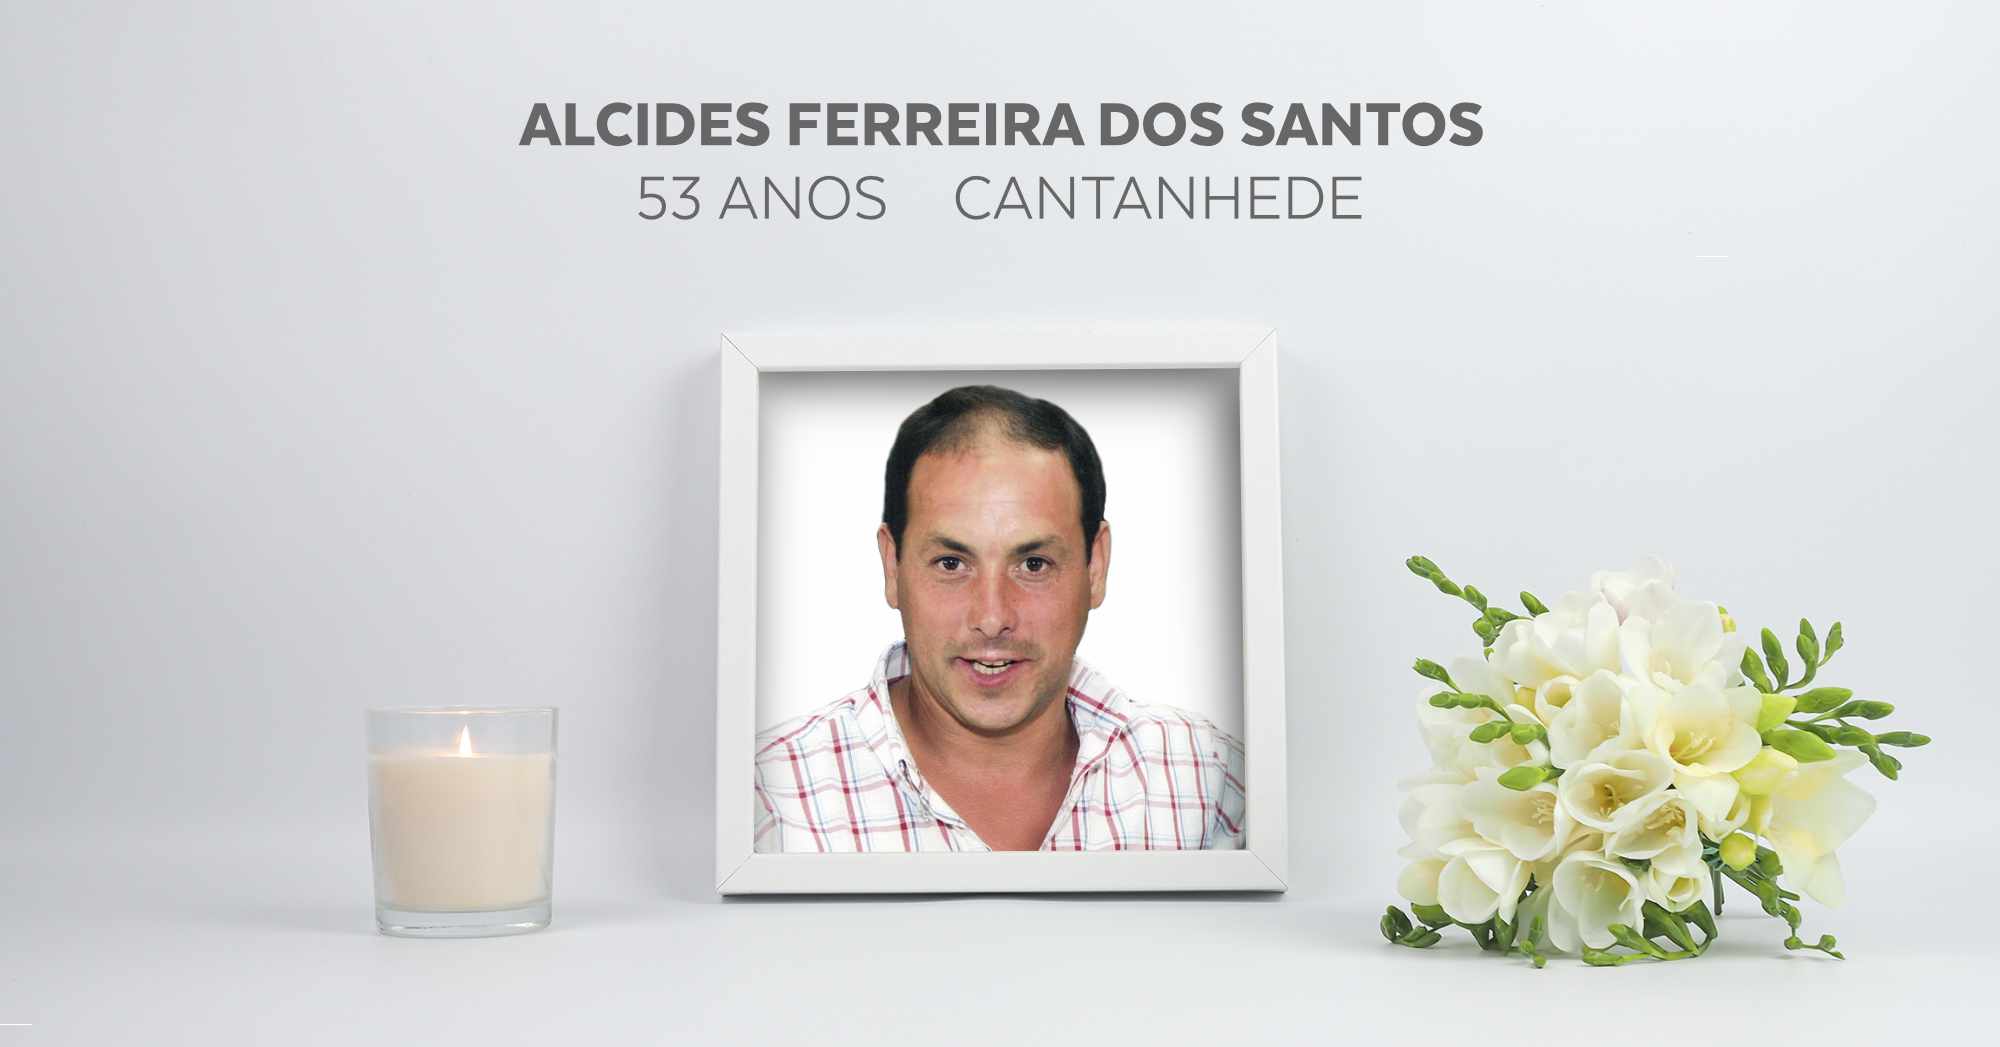 Alcides Ferreira dos Santos